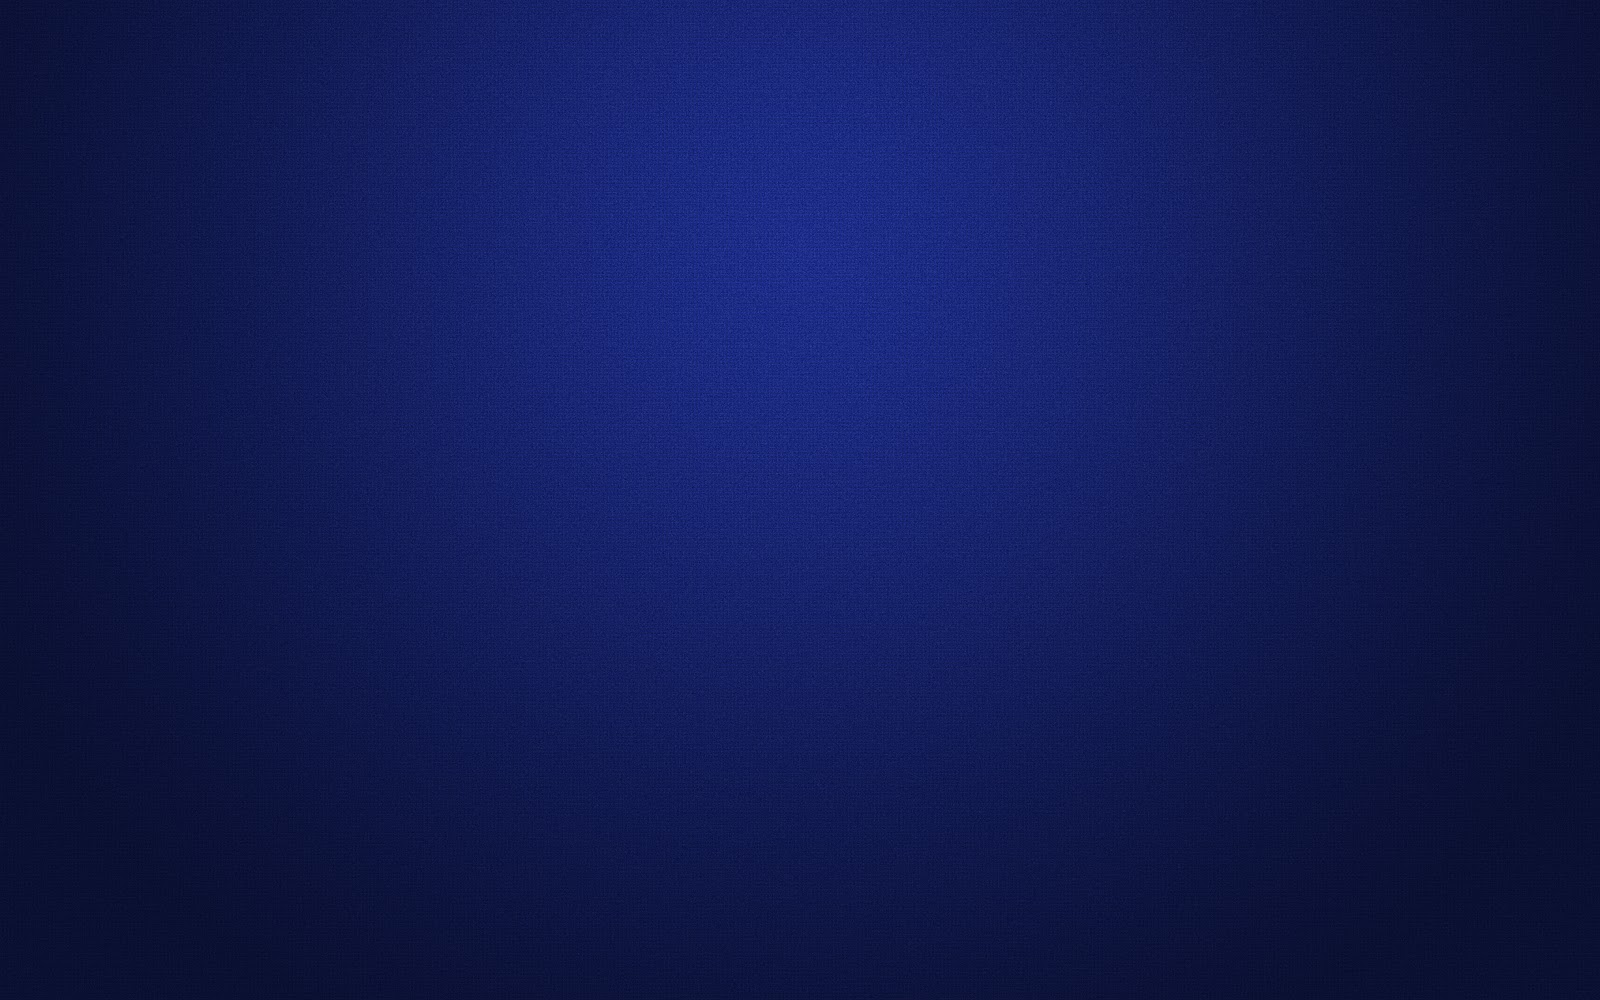 48+] Dark Blue HD Wallpapers - WallpaperSafari